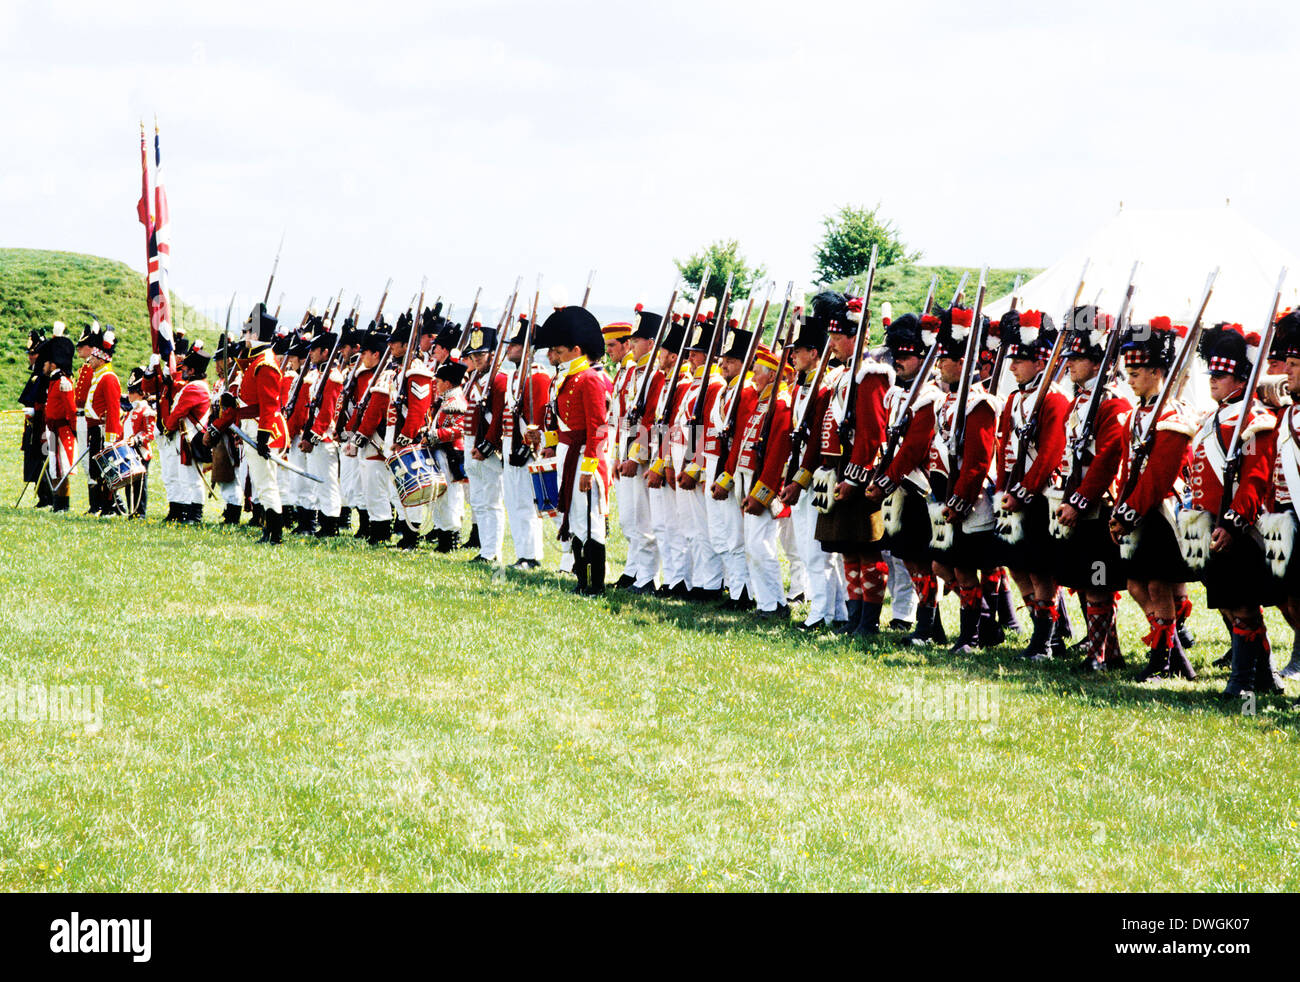 Esercito britannico, 1815, rievocazione storica, soldato soldati come distribuito nella battaglia di Waterloo e la penisola di guerra, esercito uniformi uniforme England Regno Unito Foto Stock